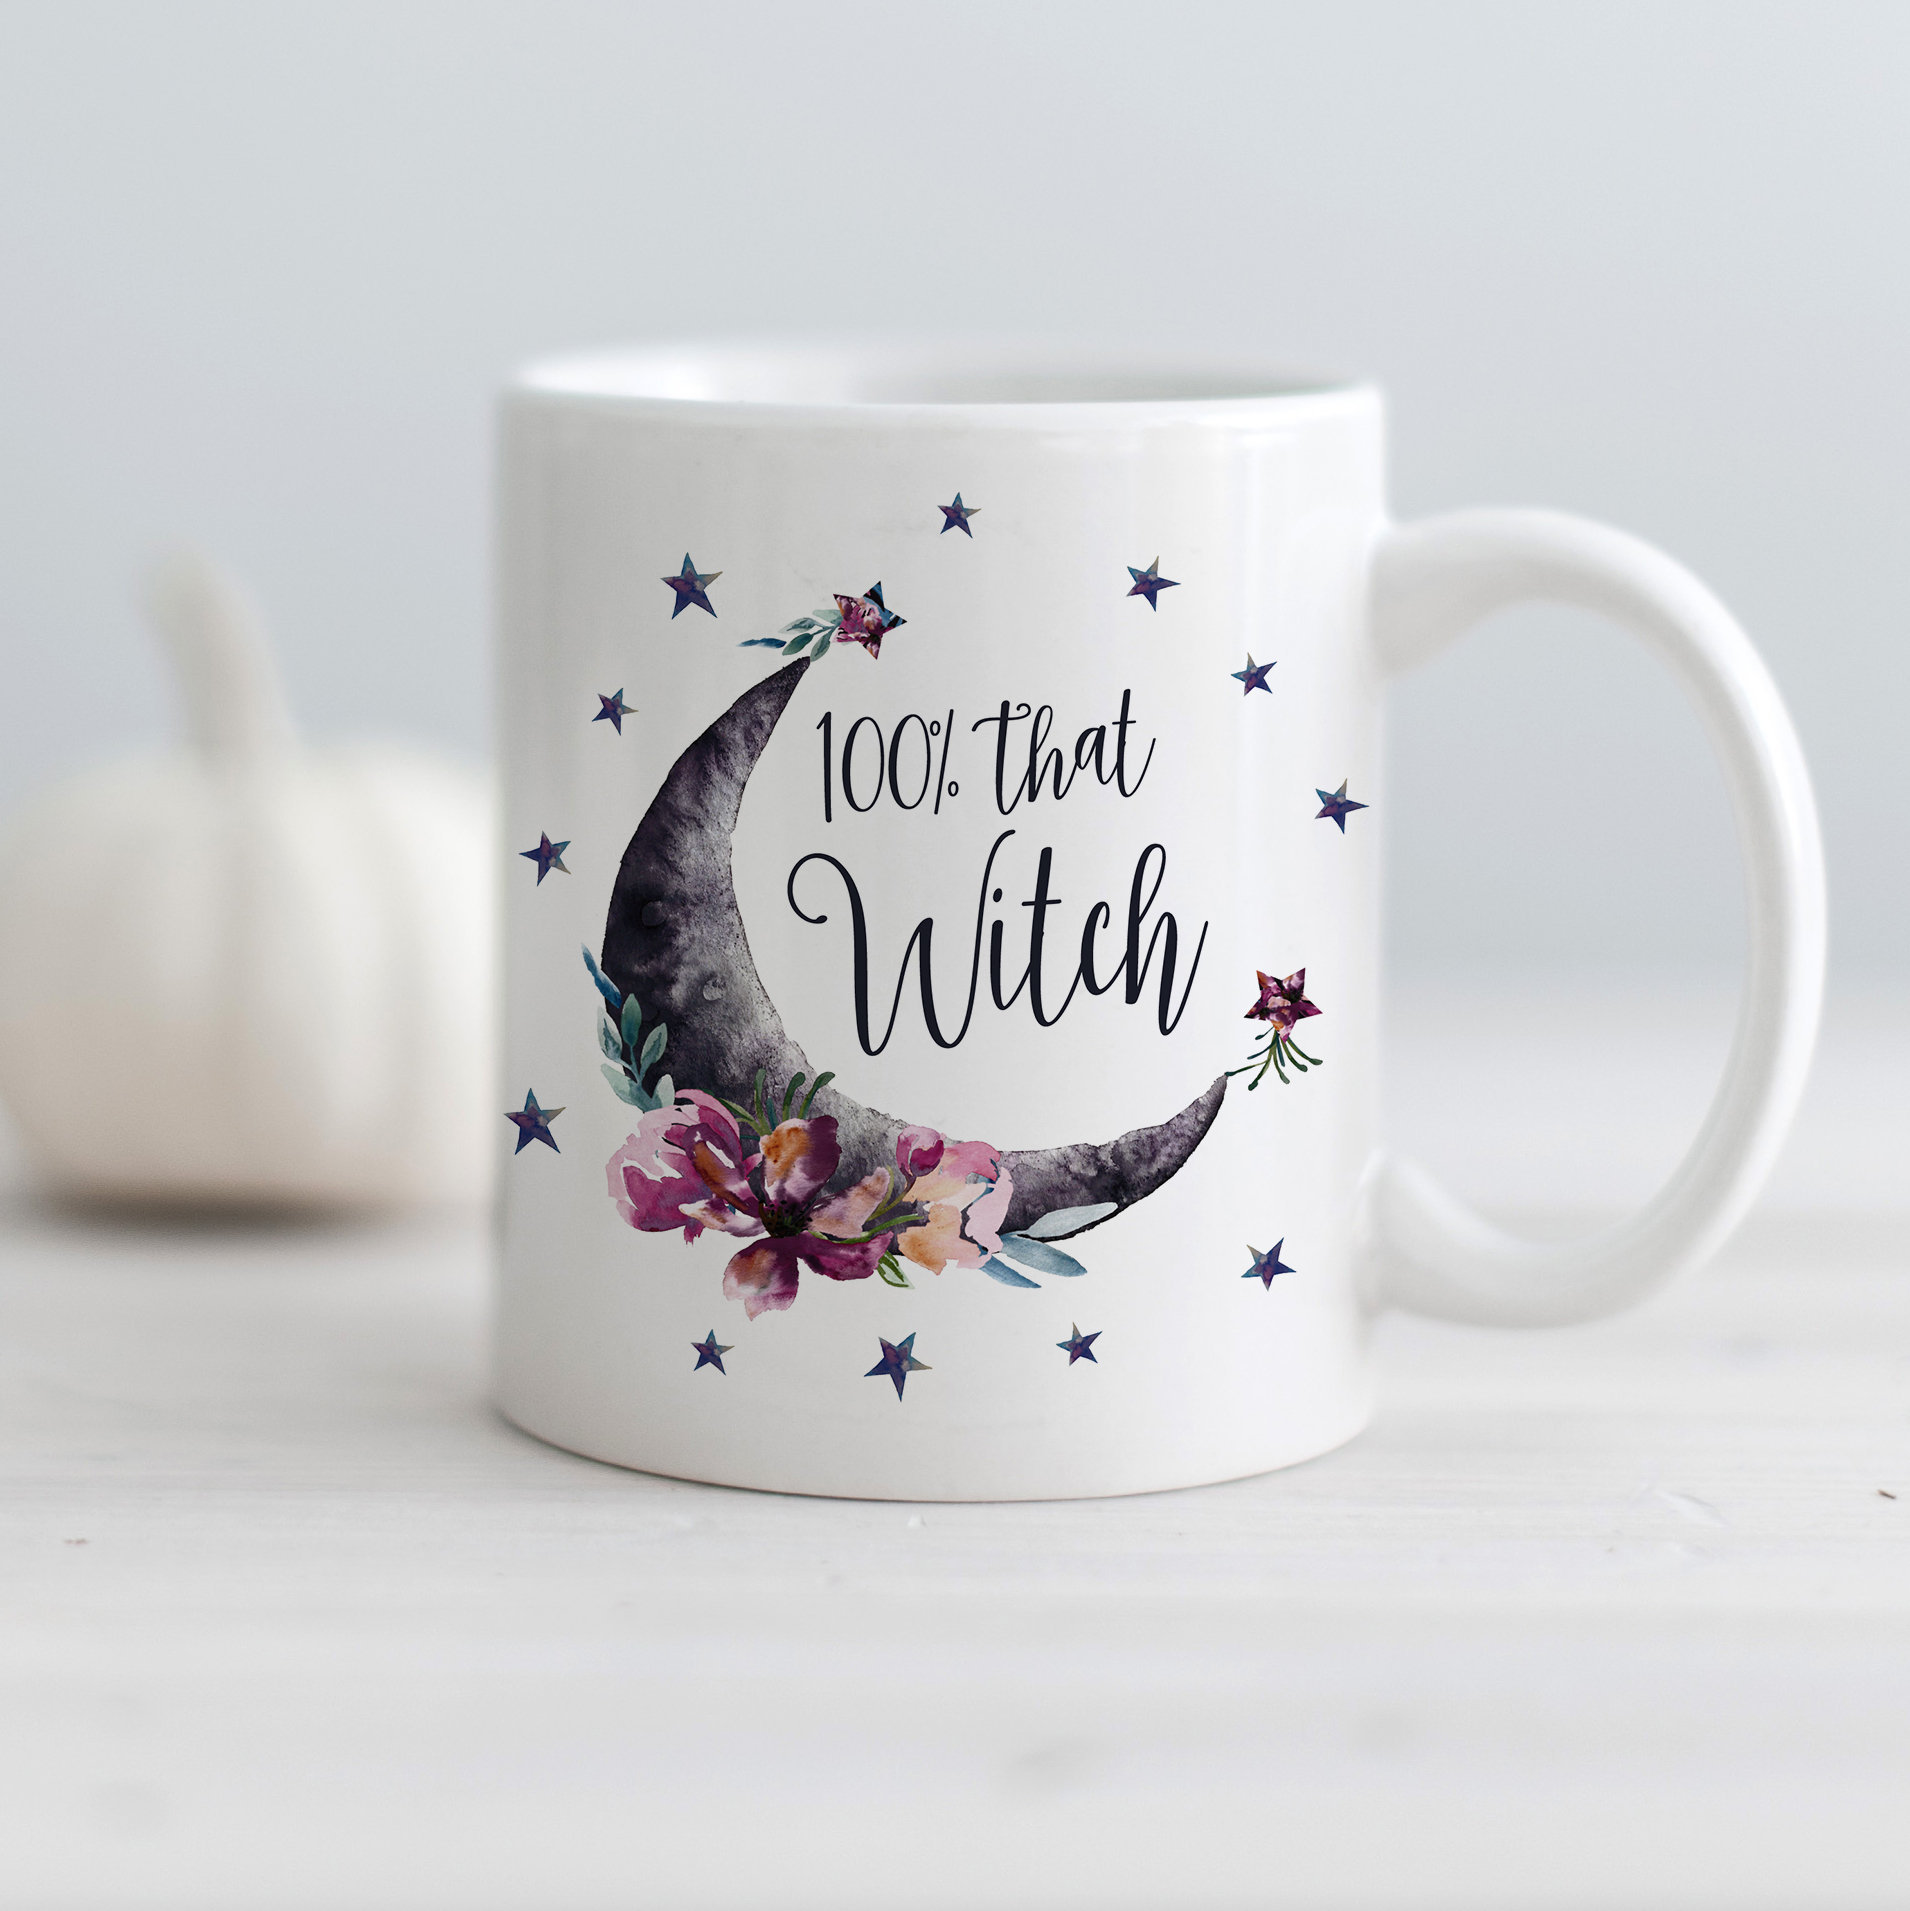 Handmade ceramic mug with witch cat design and a super cute magic